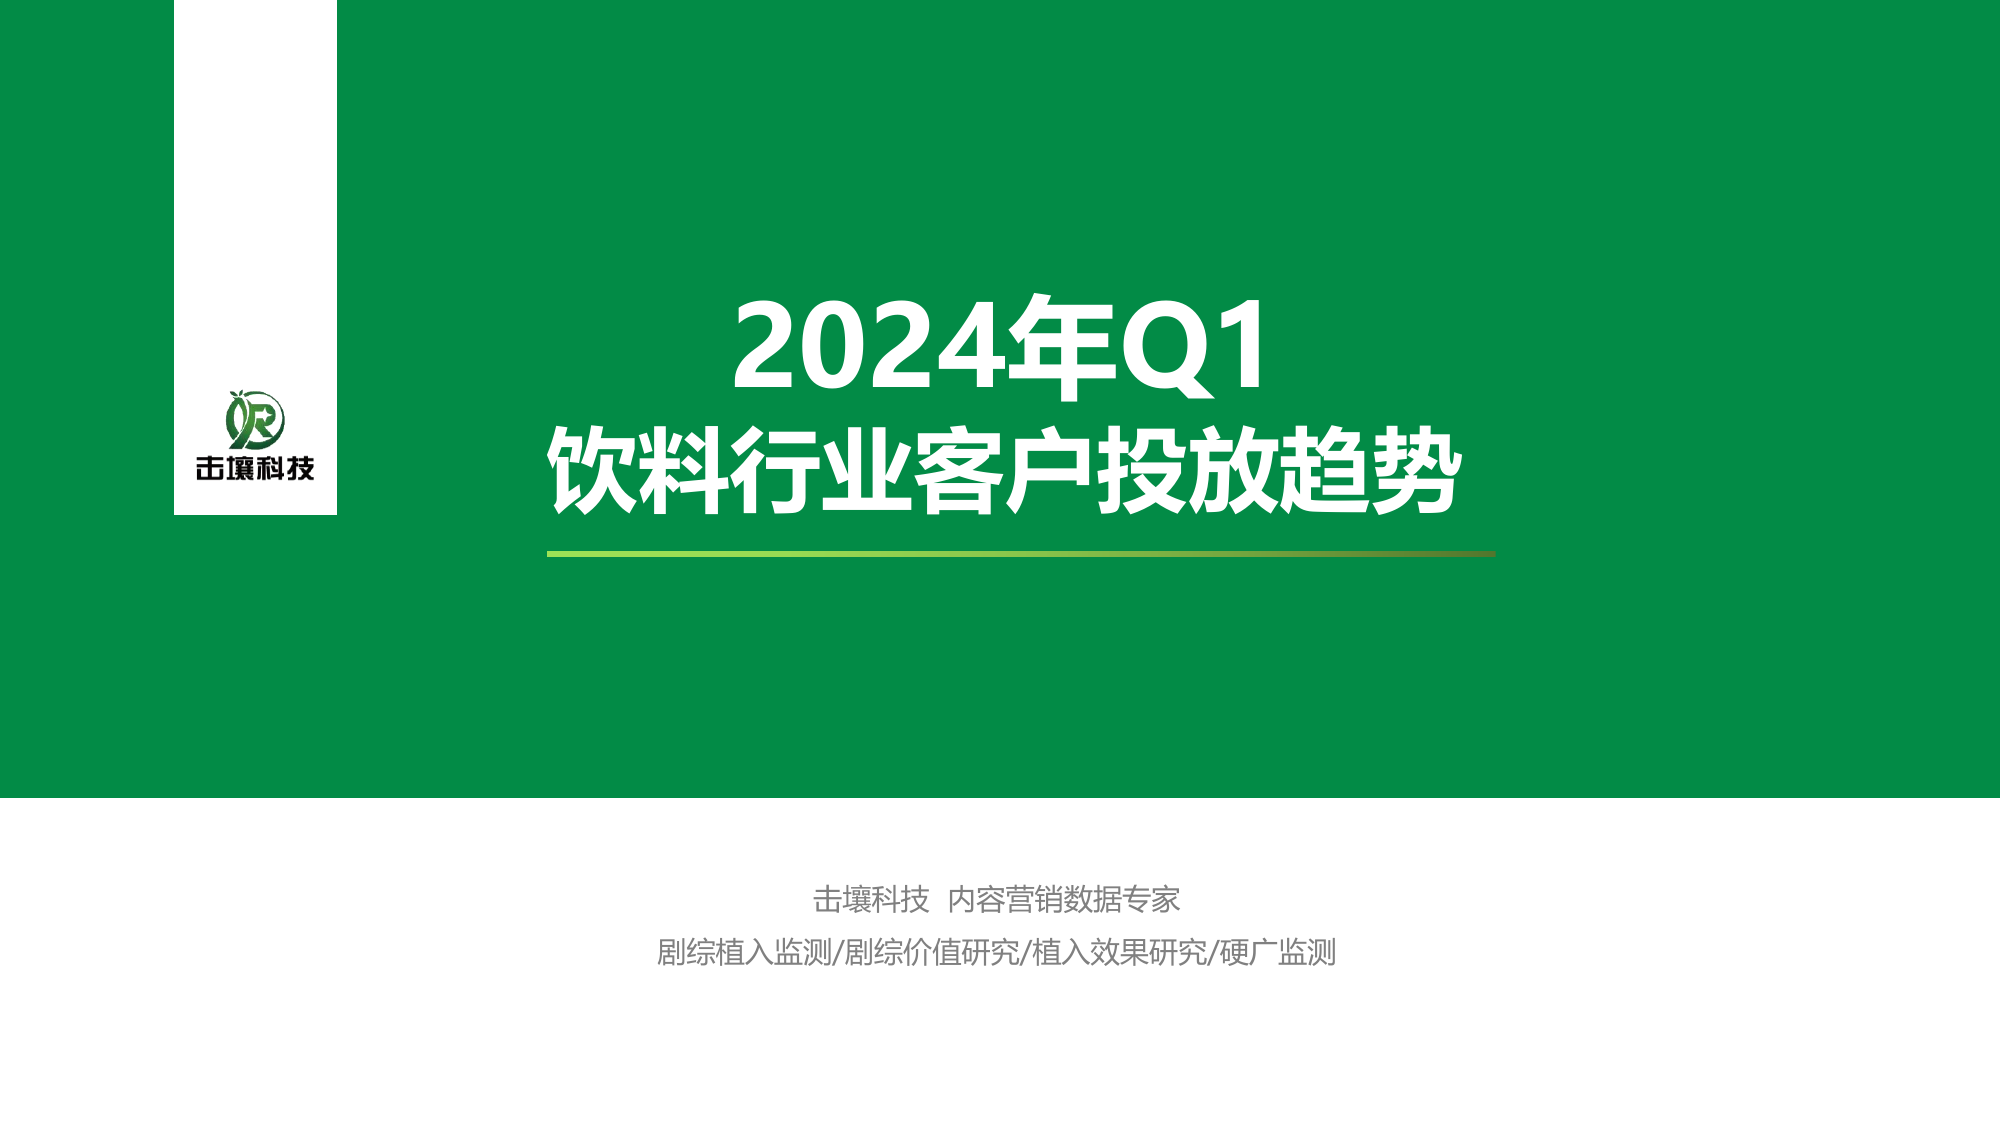 2024年Q1饮料行业客户投放趋势报告-击壤科技-202404.pdf